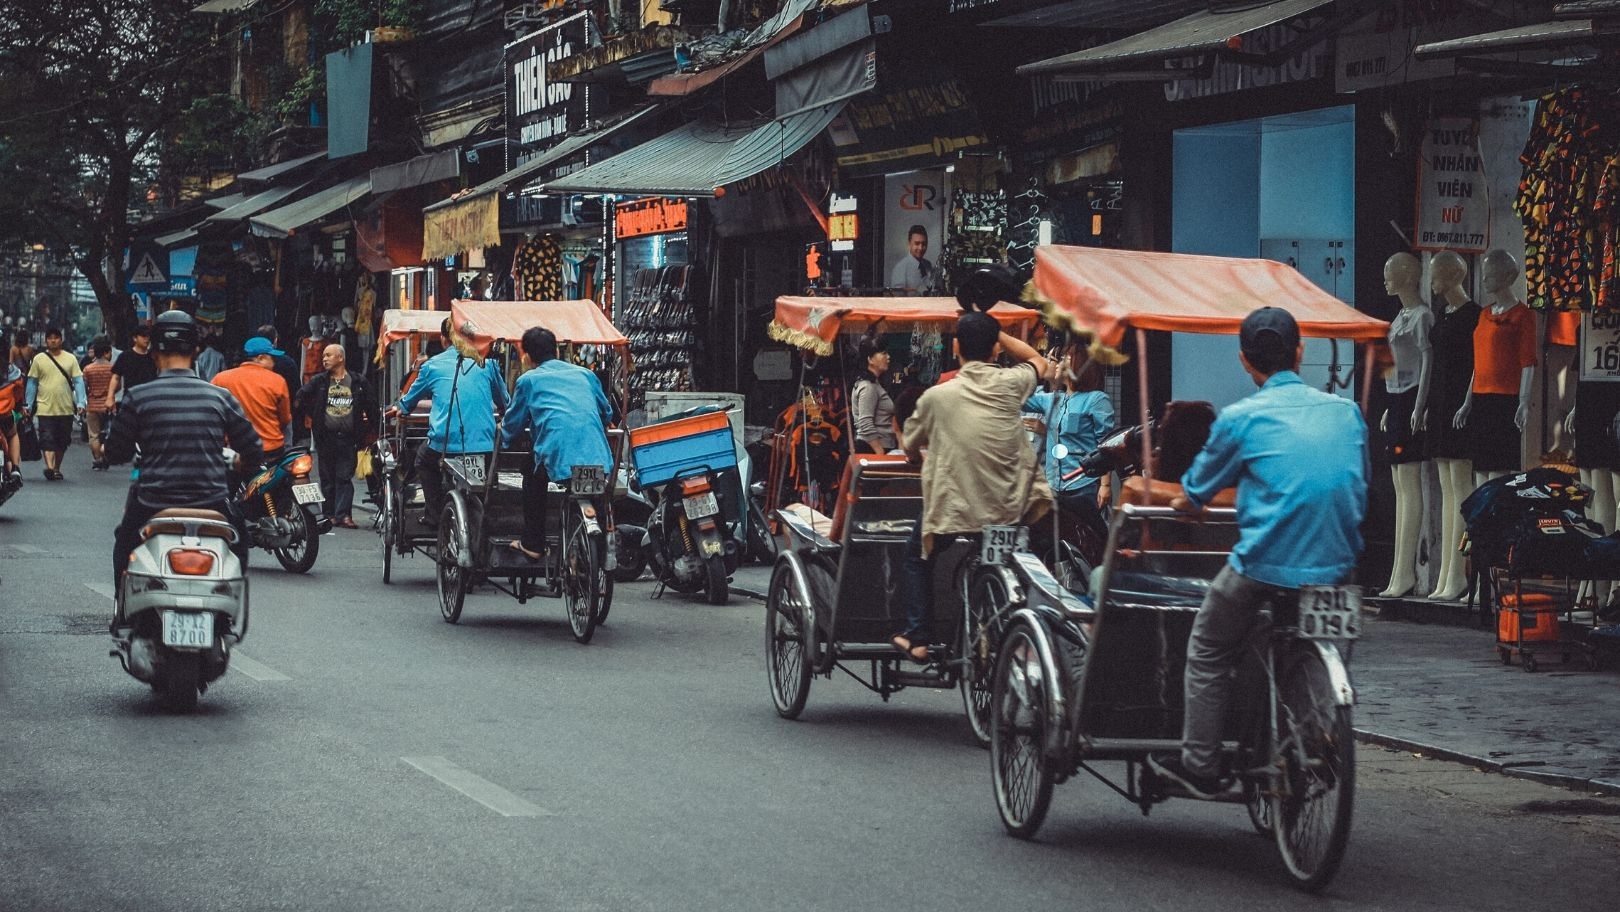 A street in Vietnam (Tran Phu on Unsplash)